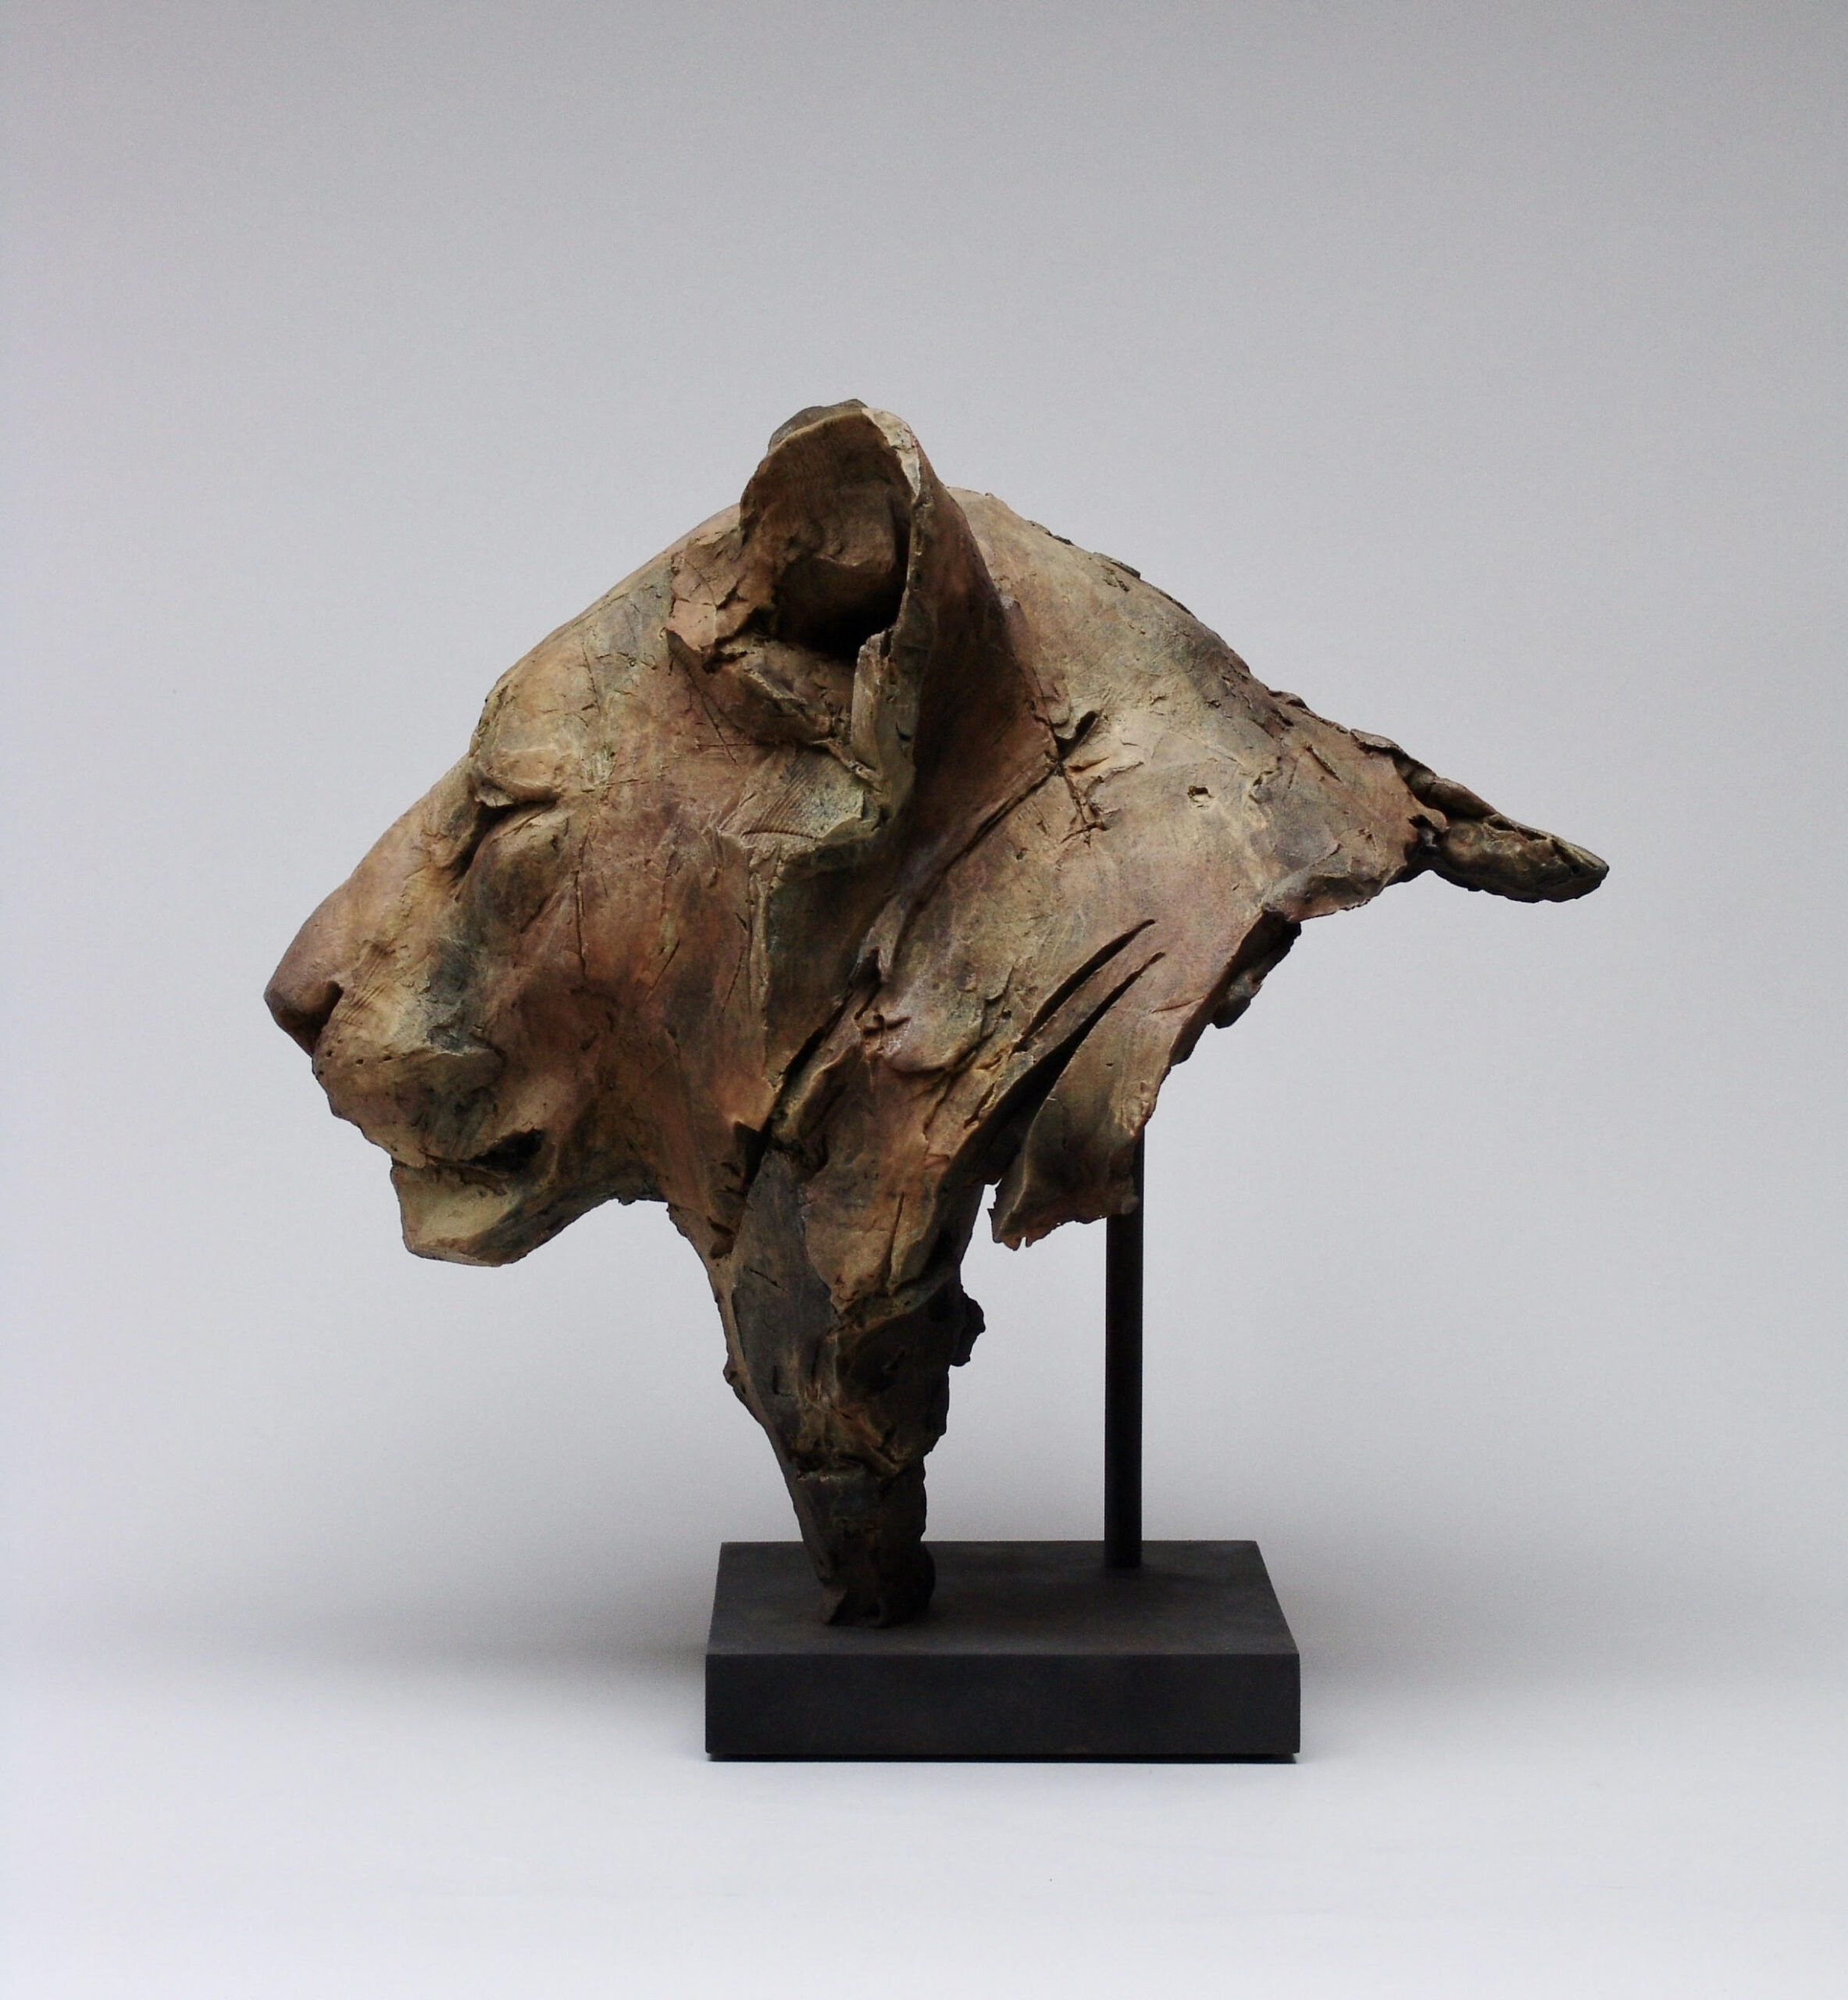 Bronze sculpture depicting a lion's head.